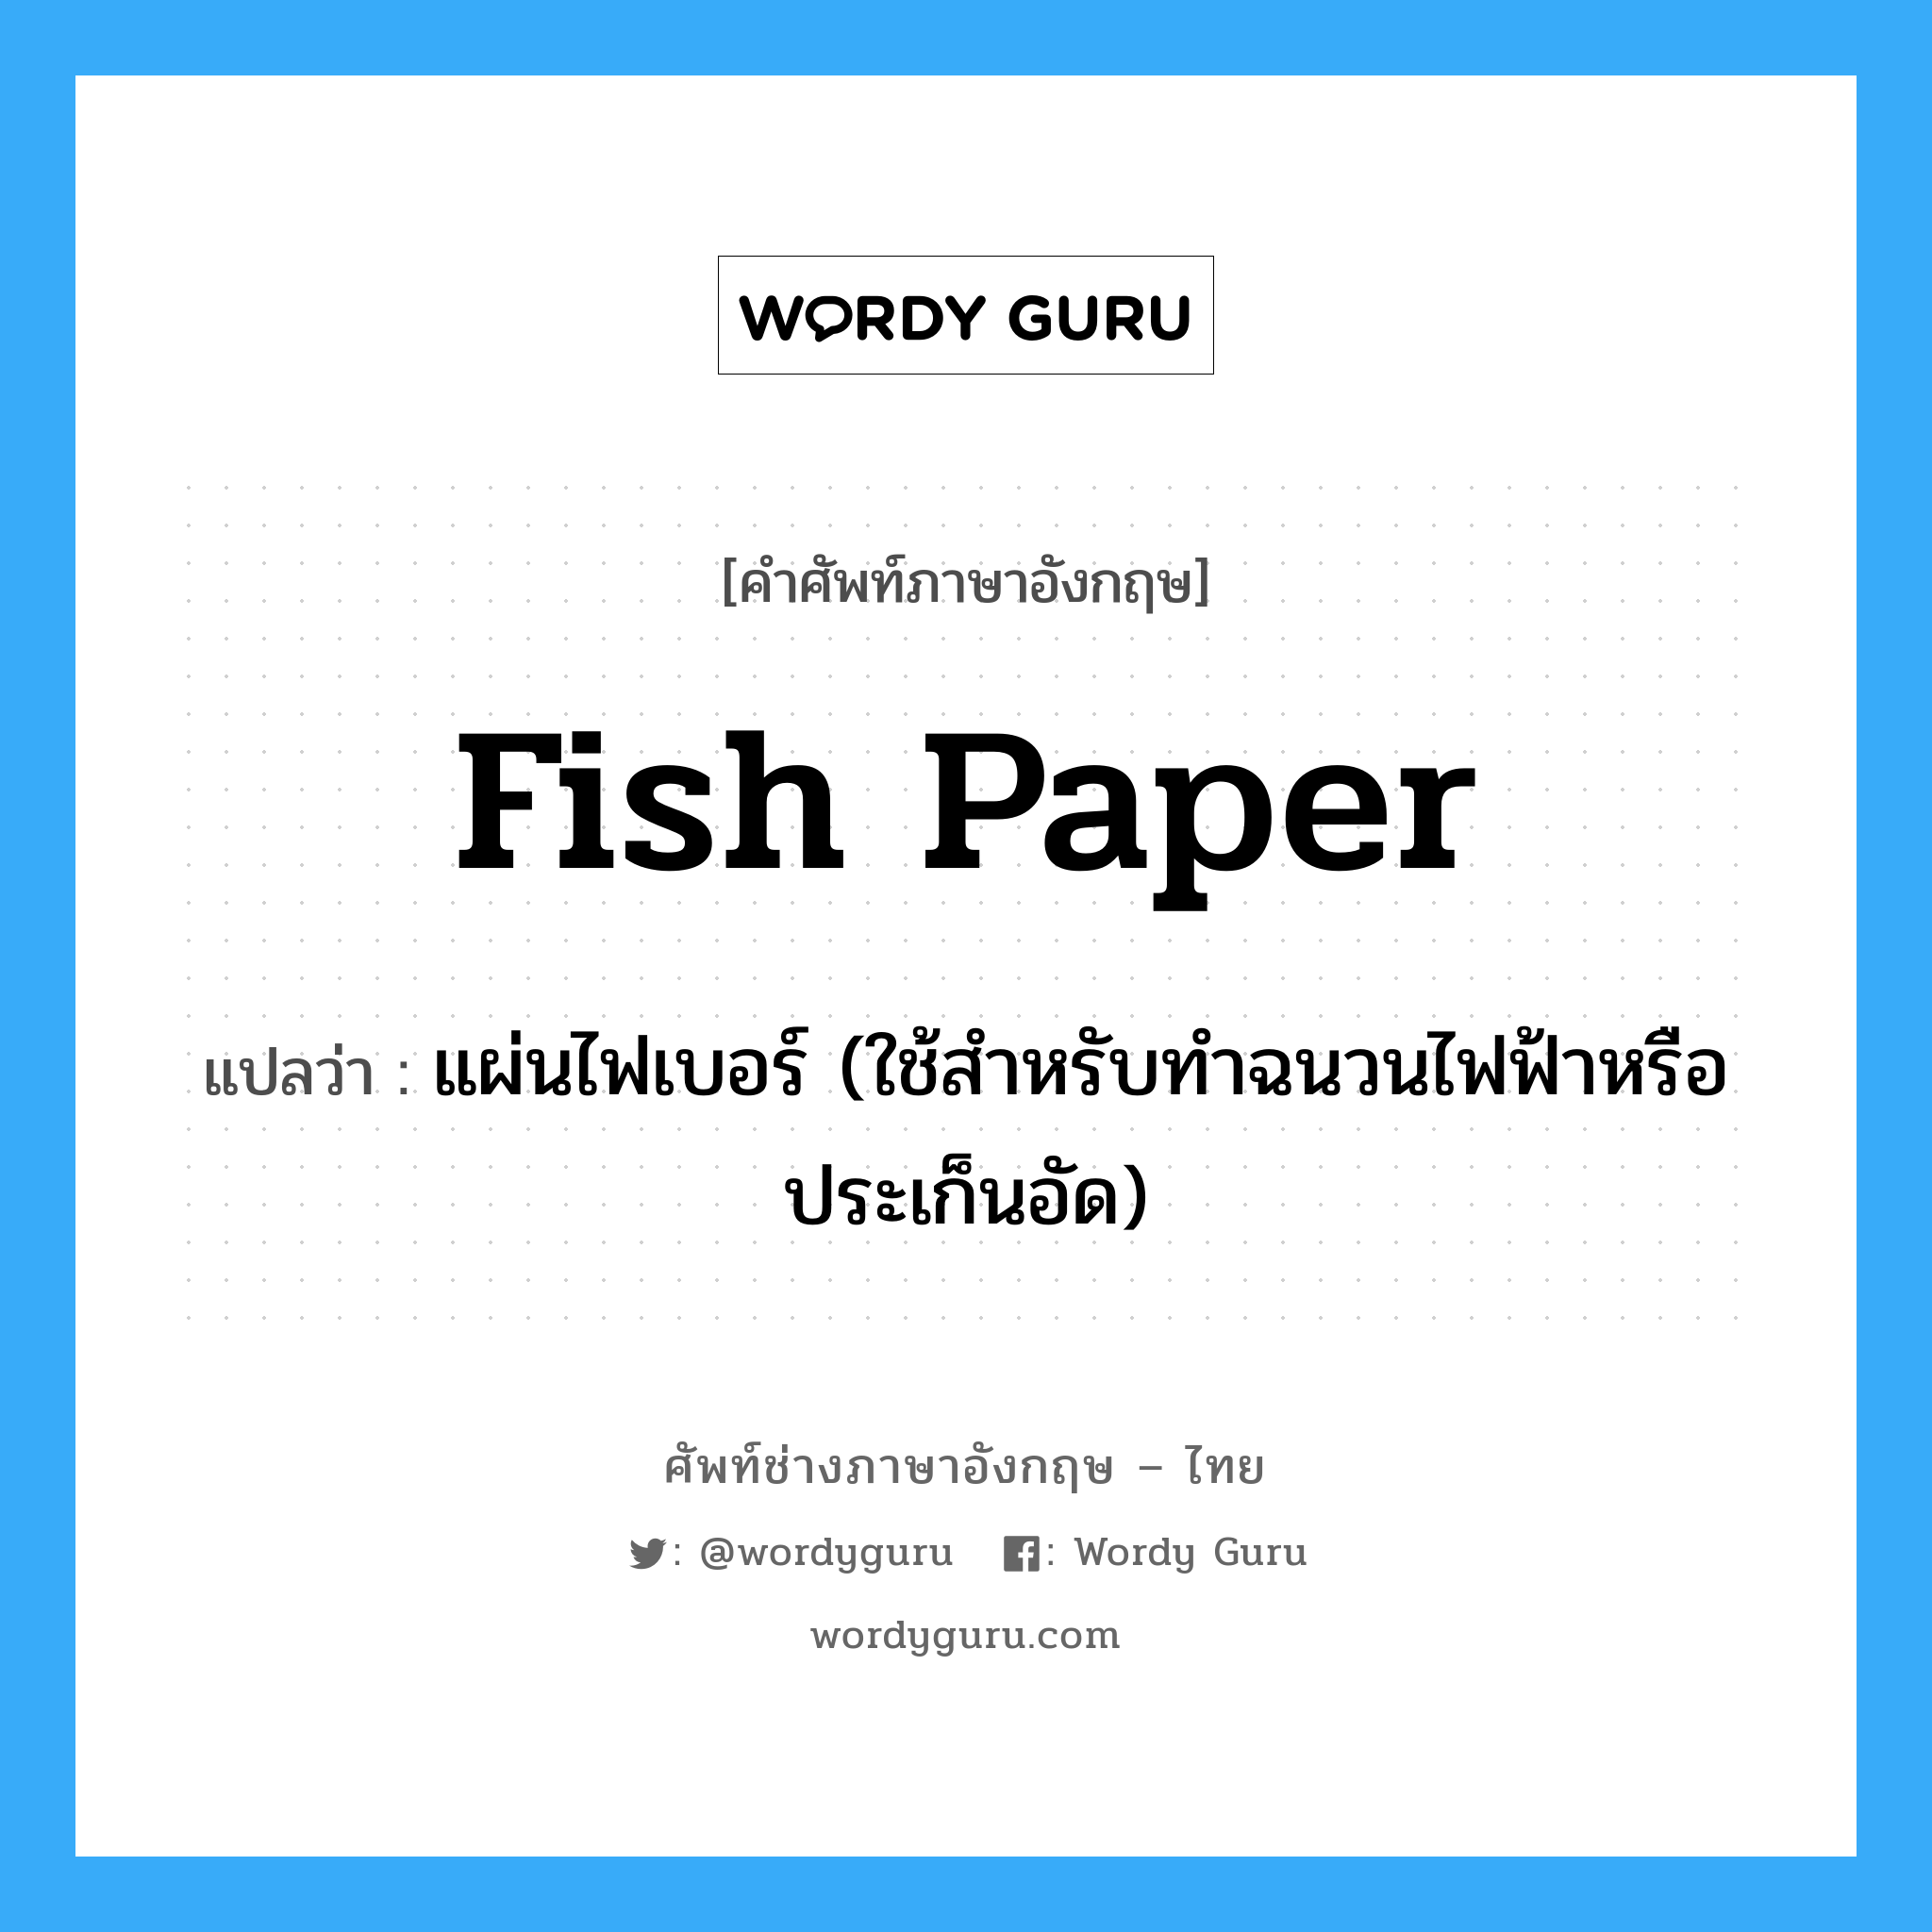 fish paper แปลว่า?, คำศัพท์ช่างภาษาอังกฤษ - ไทย fish paper คำศัพท์ภาษาอังกฤษ fish paper แปลว่า แผ่นไฟเบอร์ (ใช้สำหรับทำฉนวนไฟฟ้าหรือประเก็นอัด)